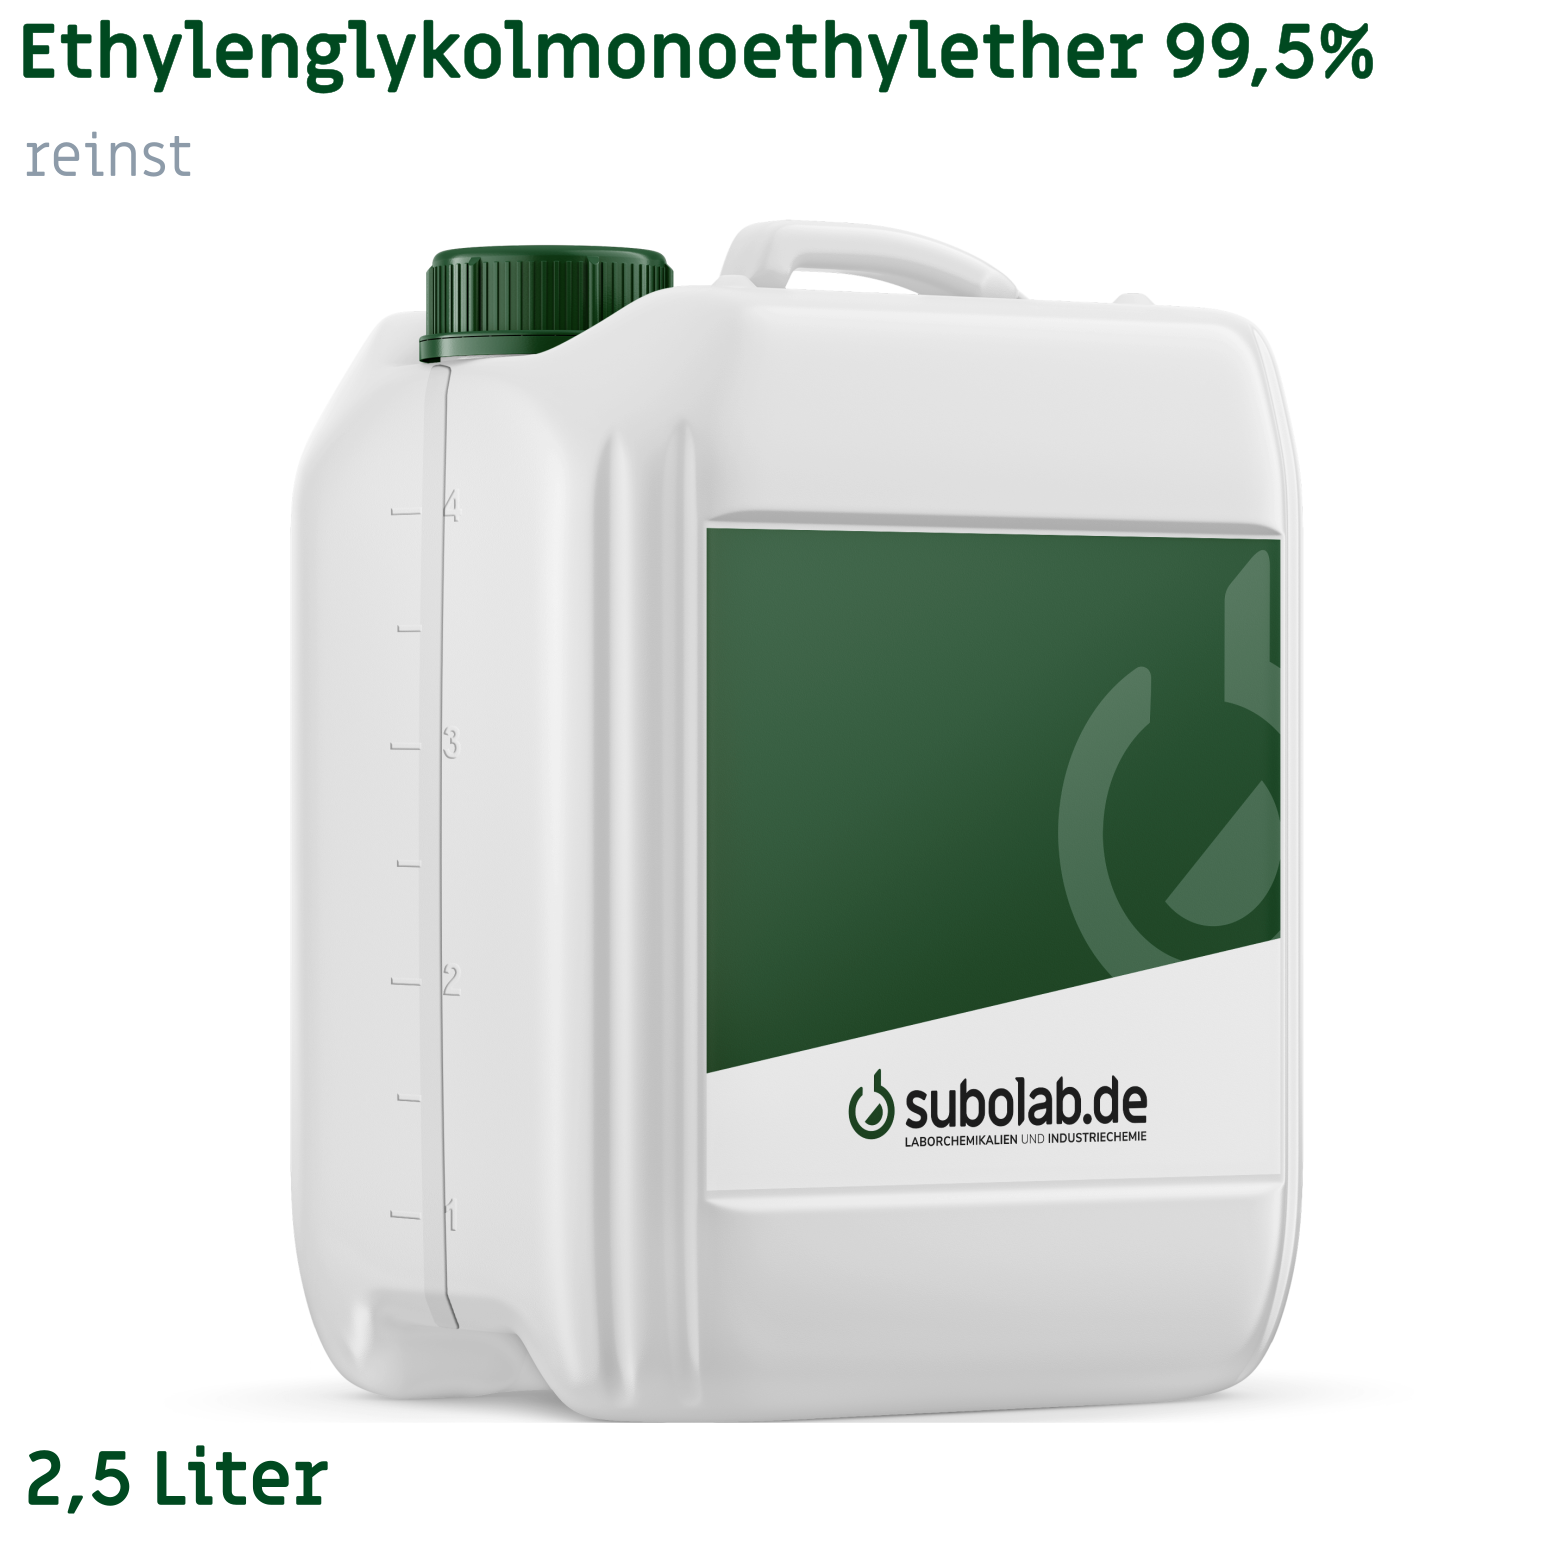 Bild von Ethylenglykolmonoethylether 99,5% reinst (2,5 Liter)